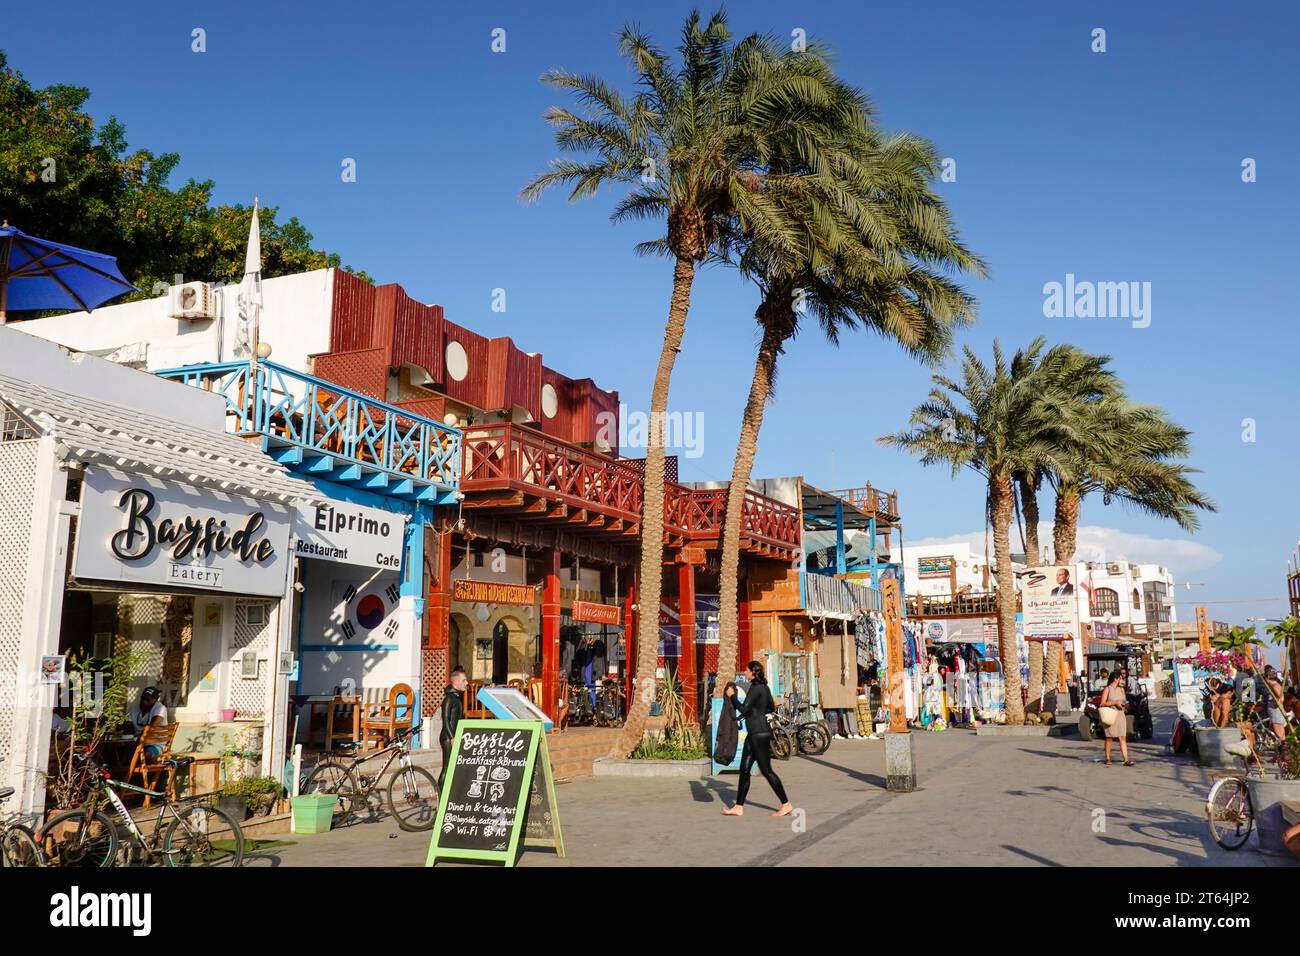 Straßenszene, Restaurants, Geschäfte, Masbat, Lighthouse Road, Dahab, Sinai, Ägypten Stock Photo